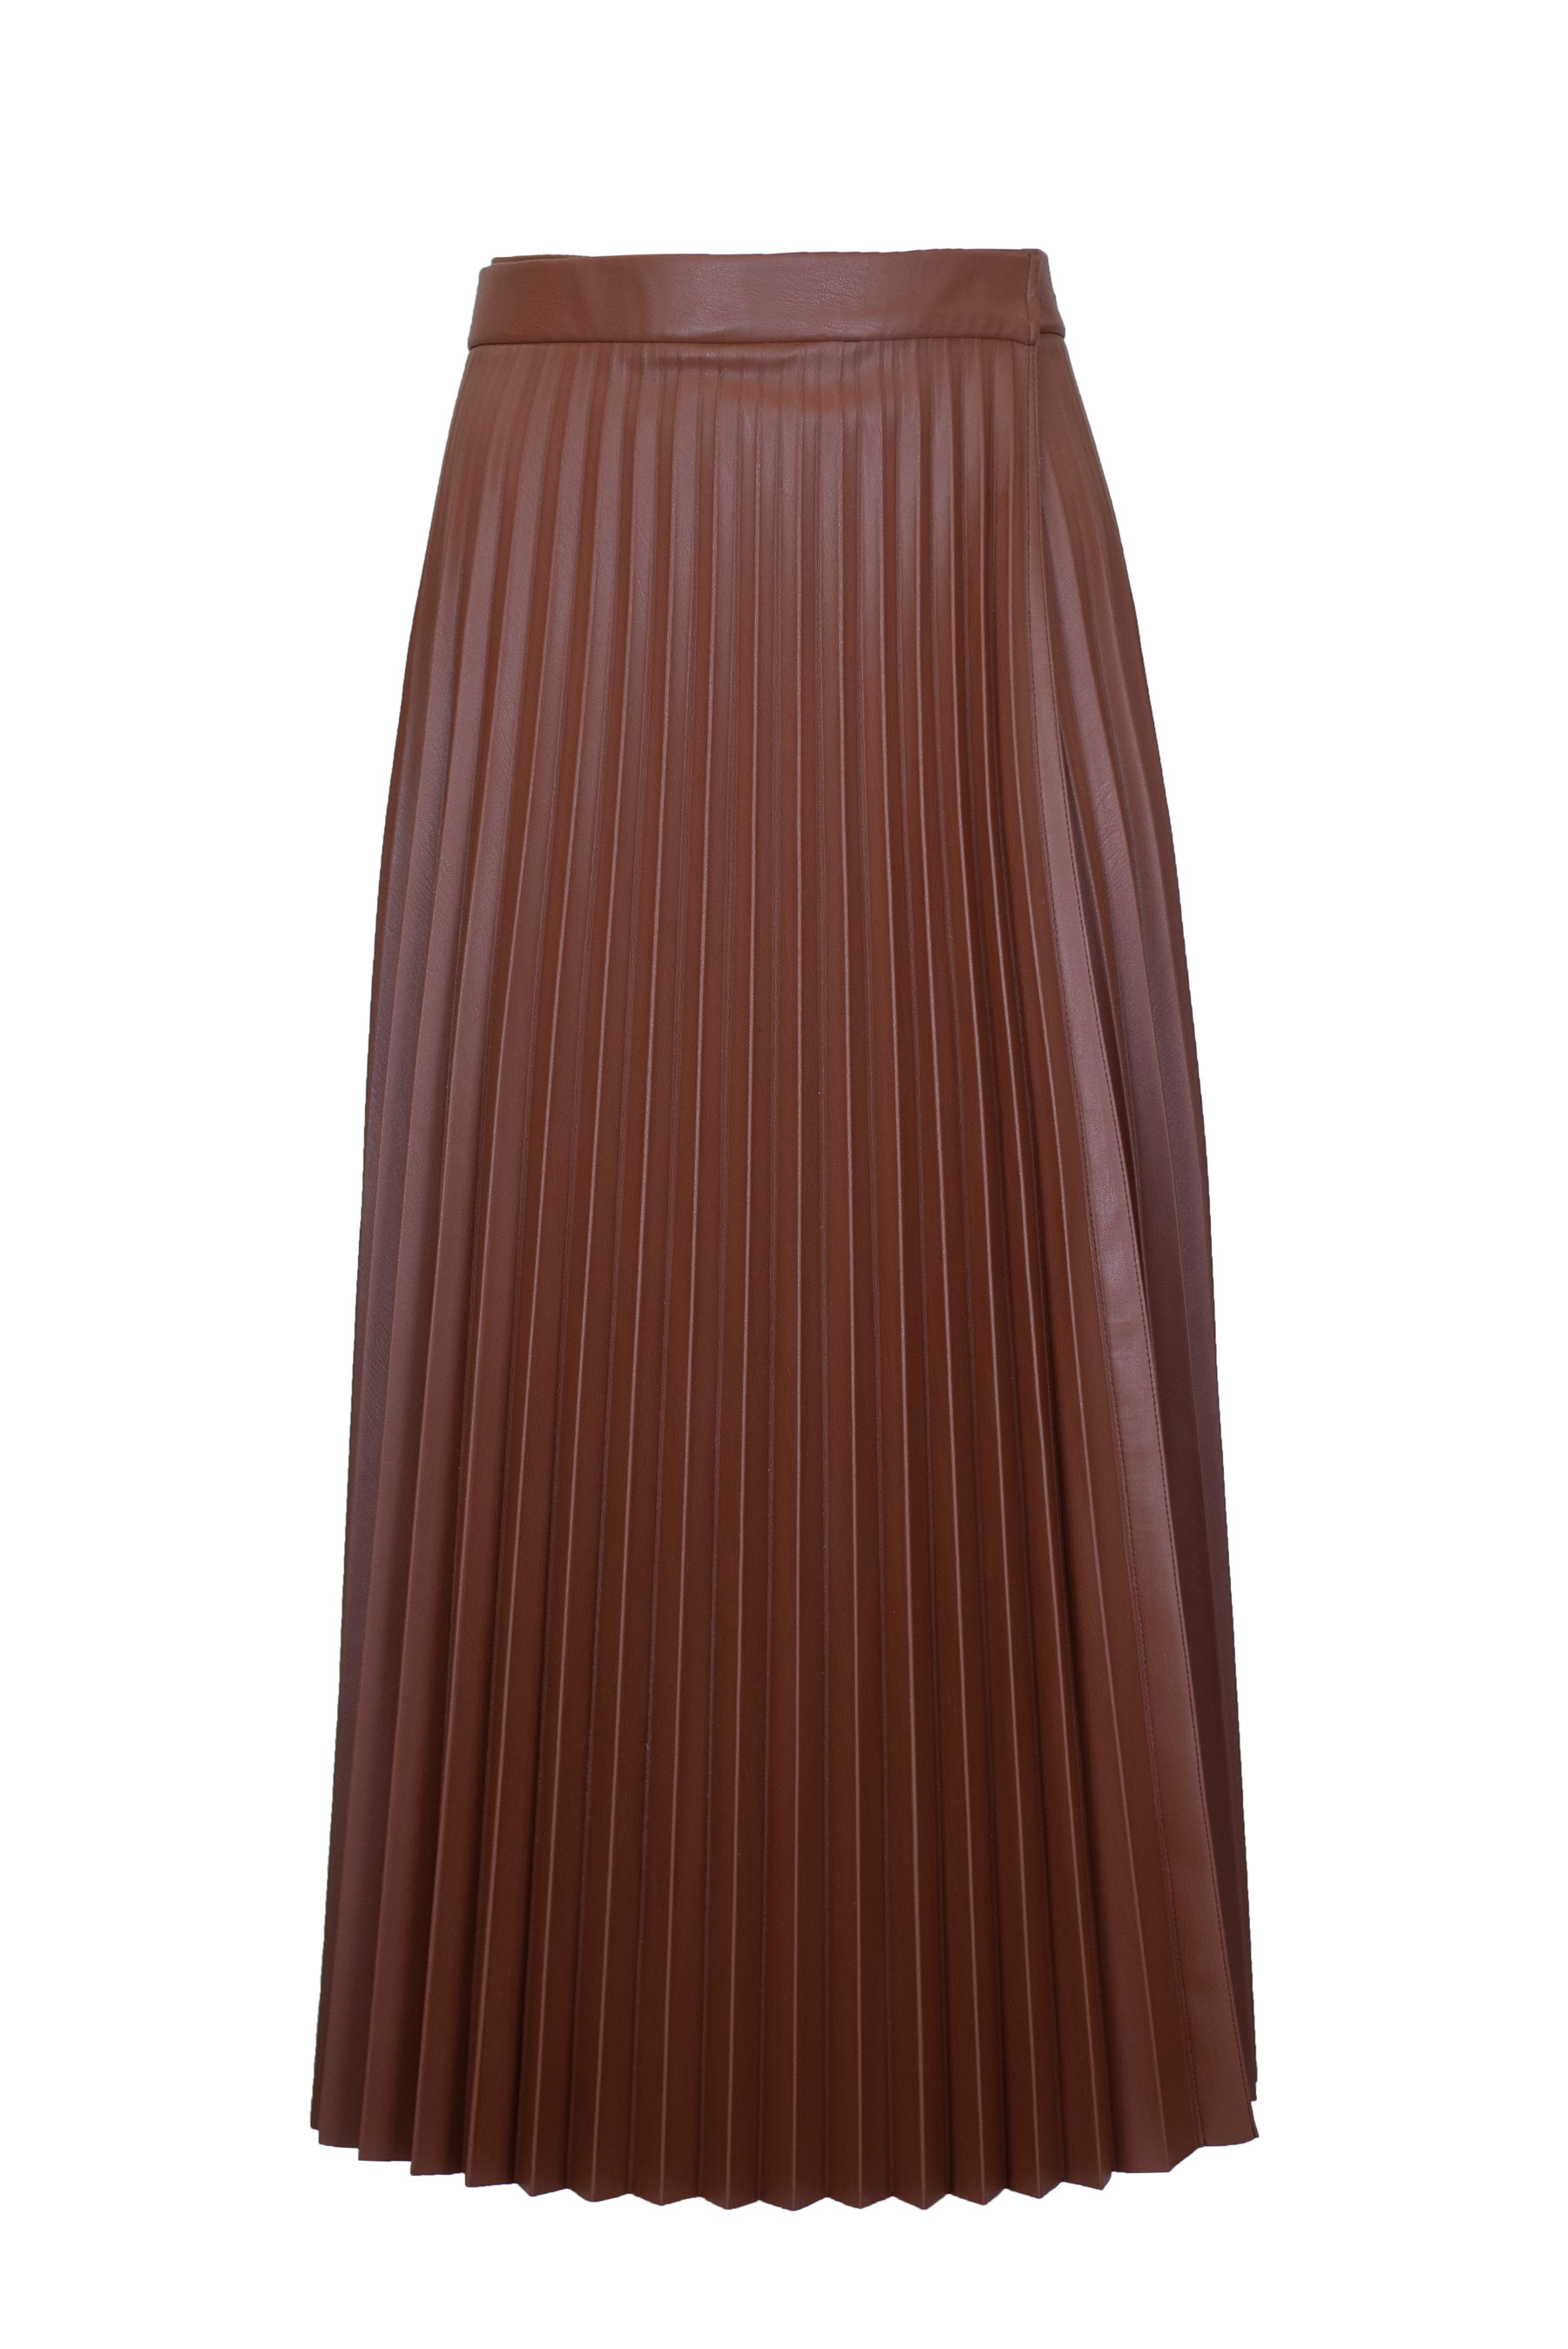 Спідниця-баска гофре екошкіряна коричнева фото